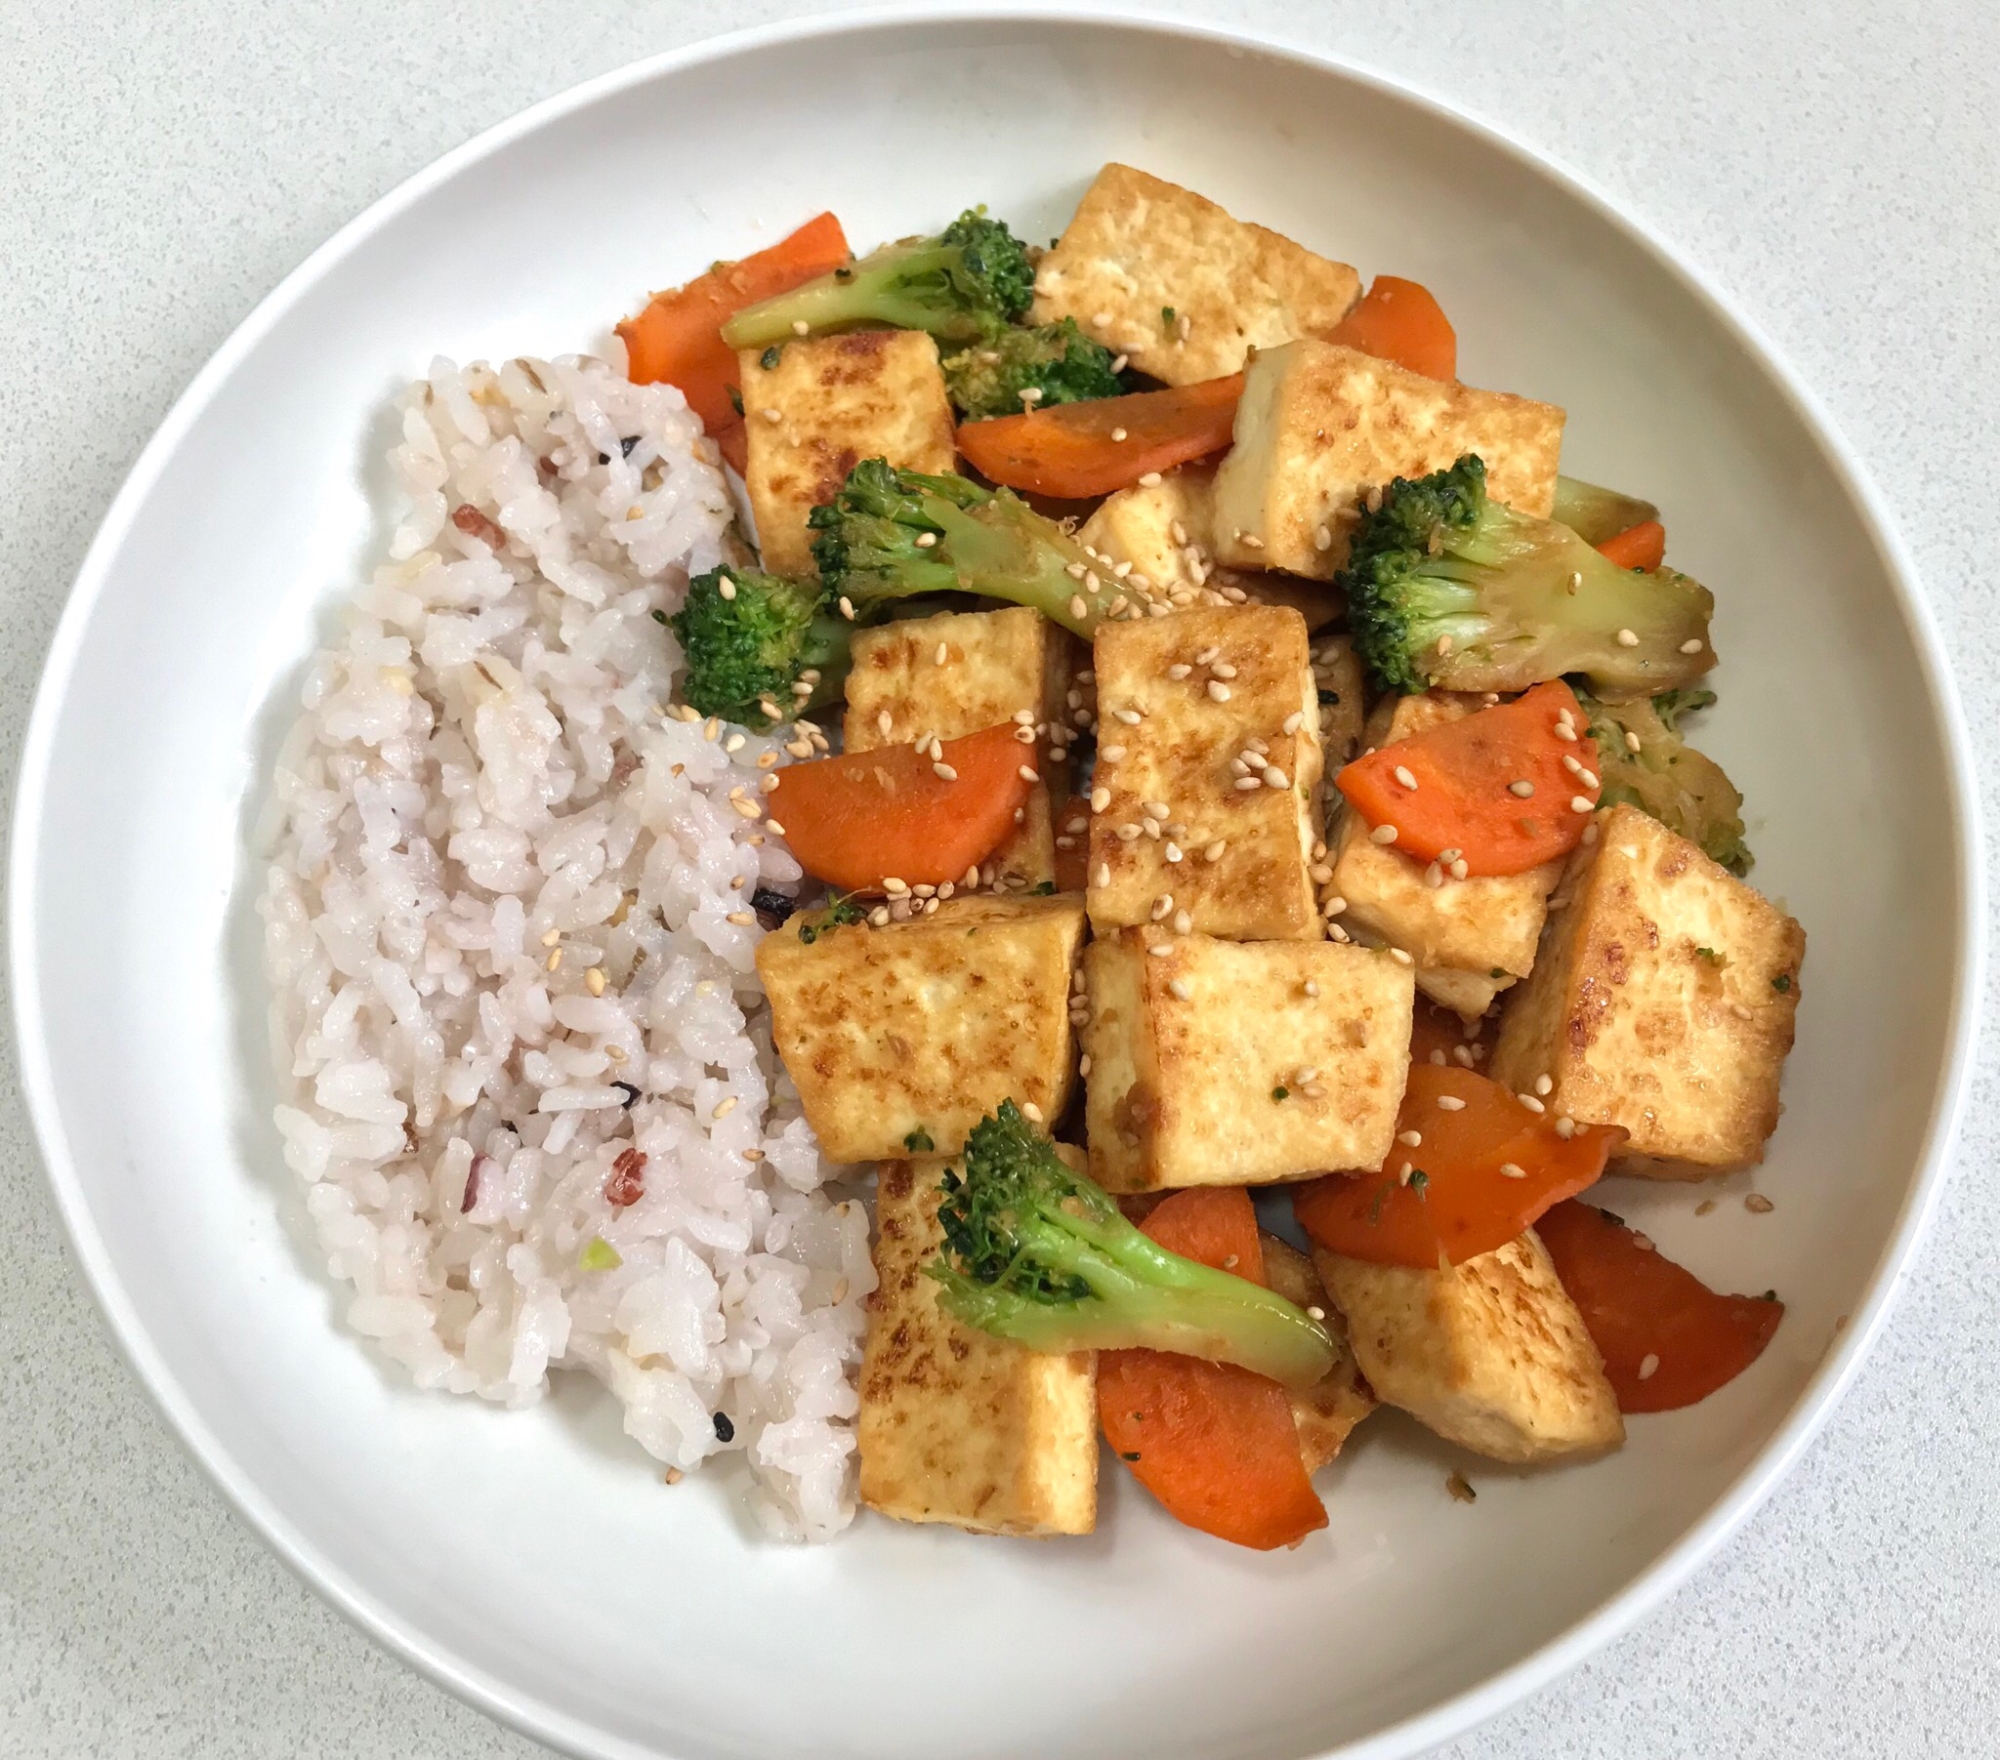 豆腐と野菜の炒め物